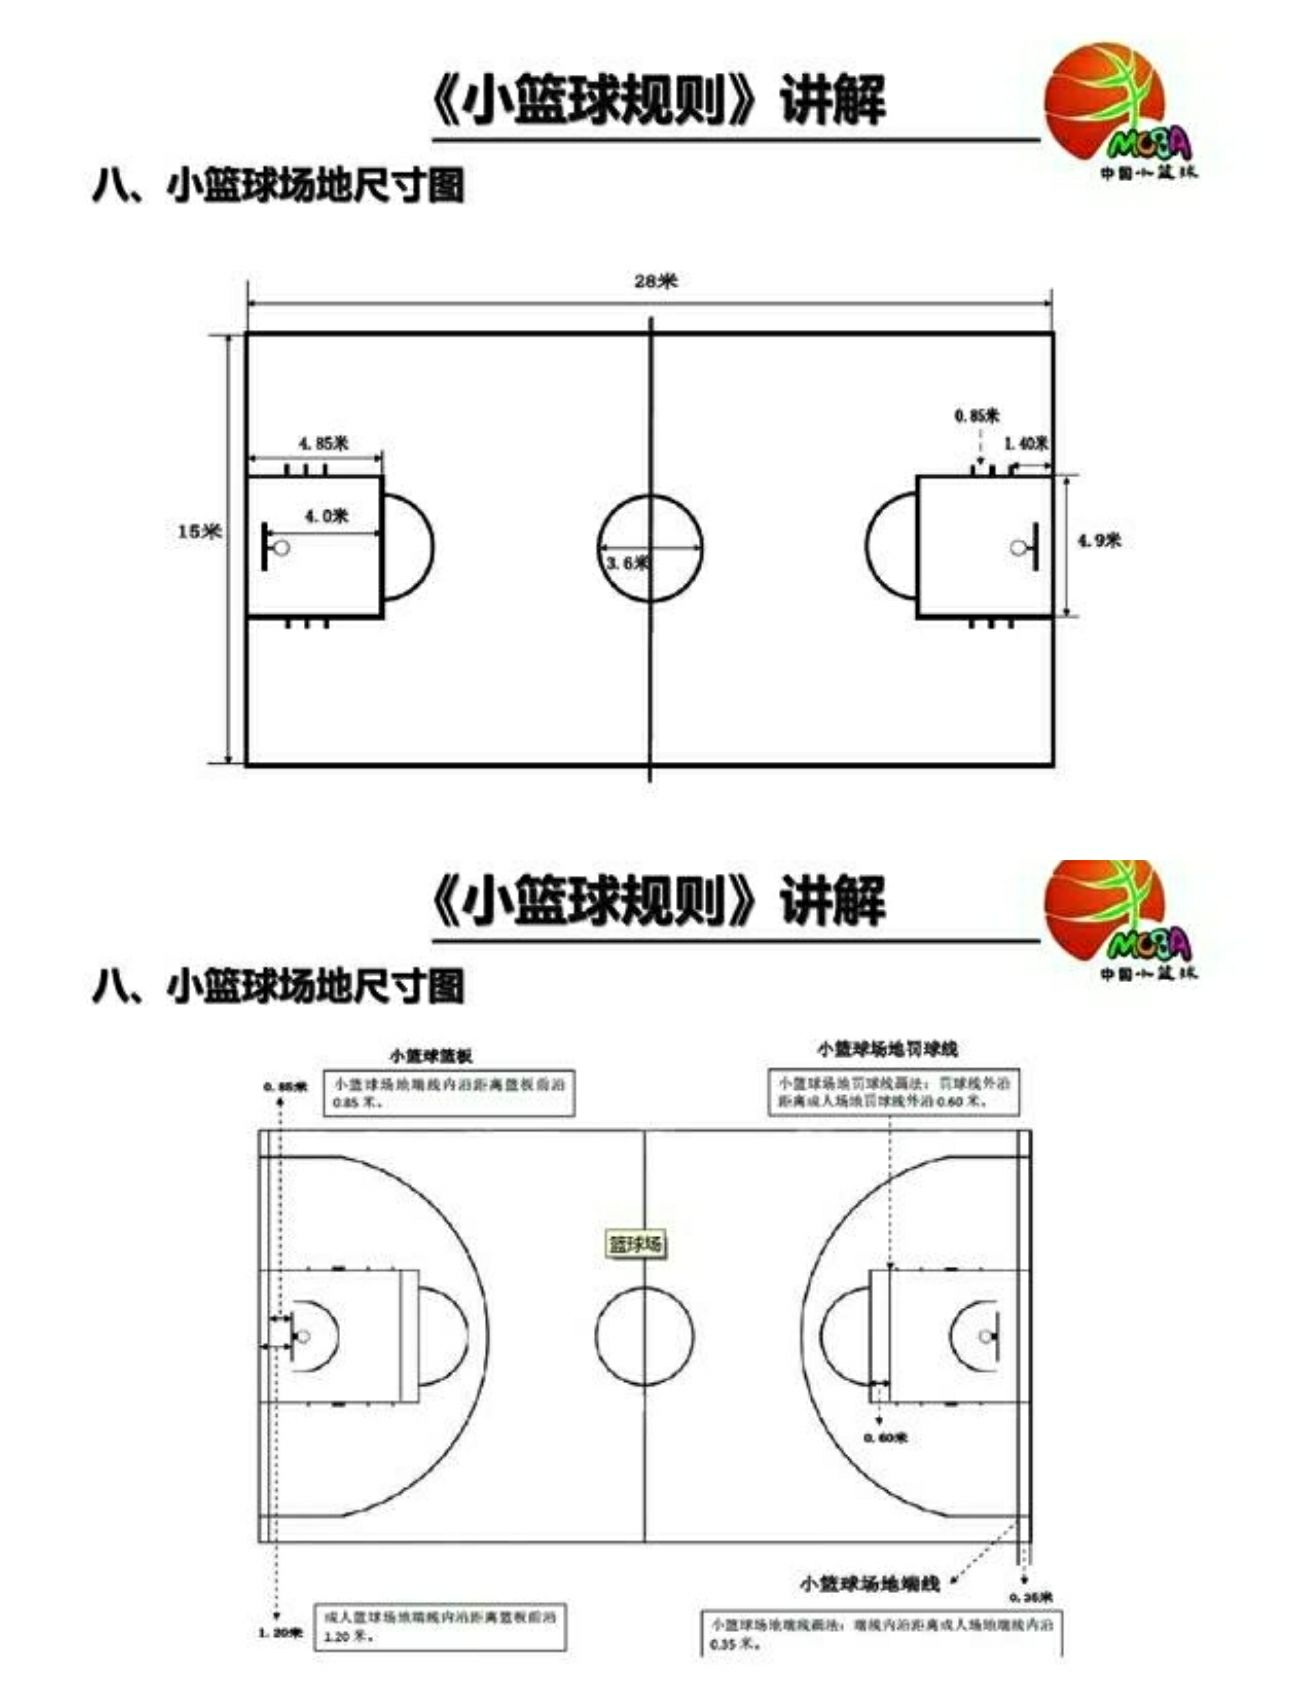 篮球场地尺寸图\r\n网球场地标准尺寸及说明\r\n要求球场是一个长方形